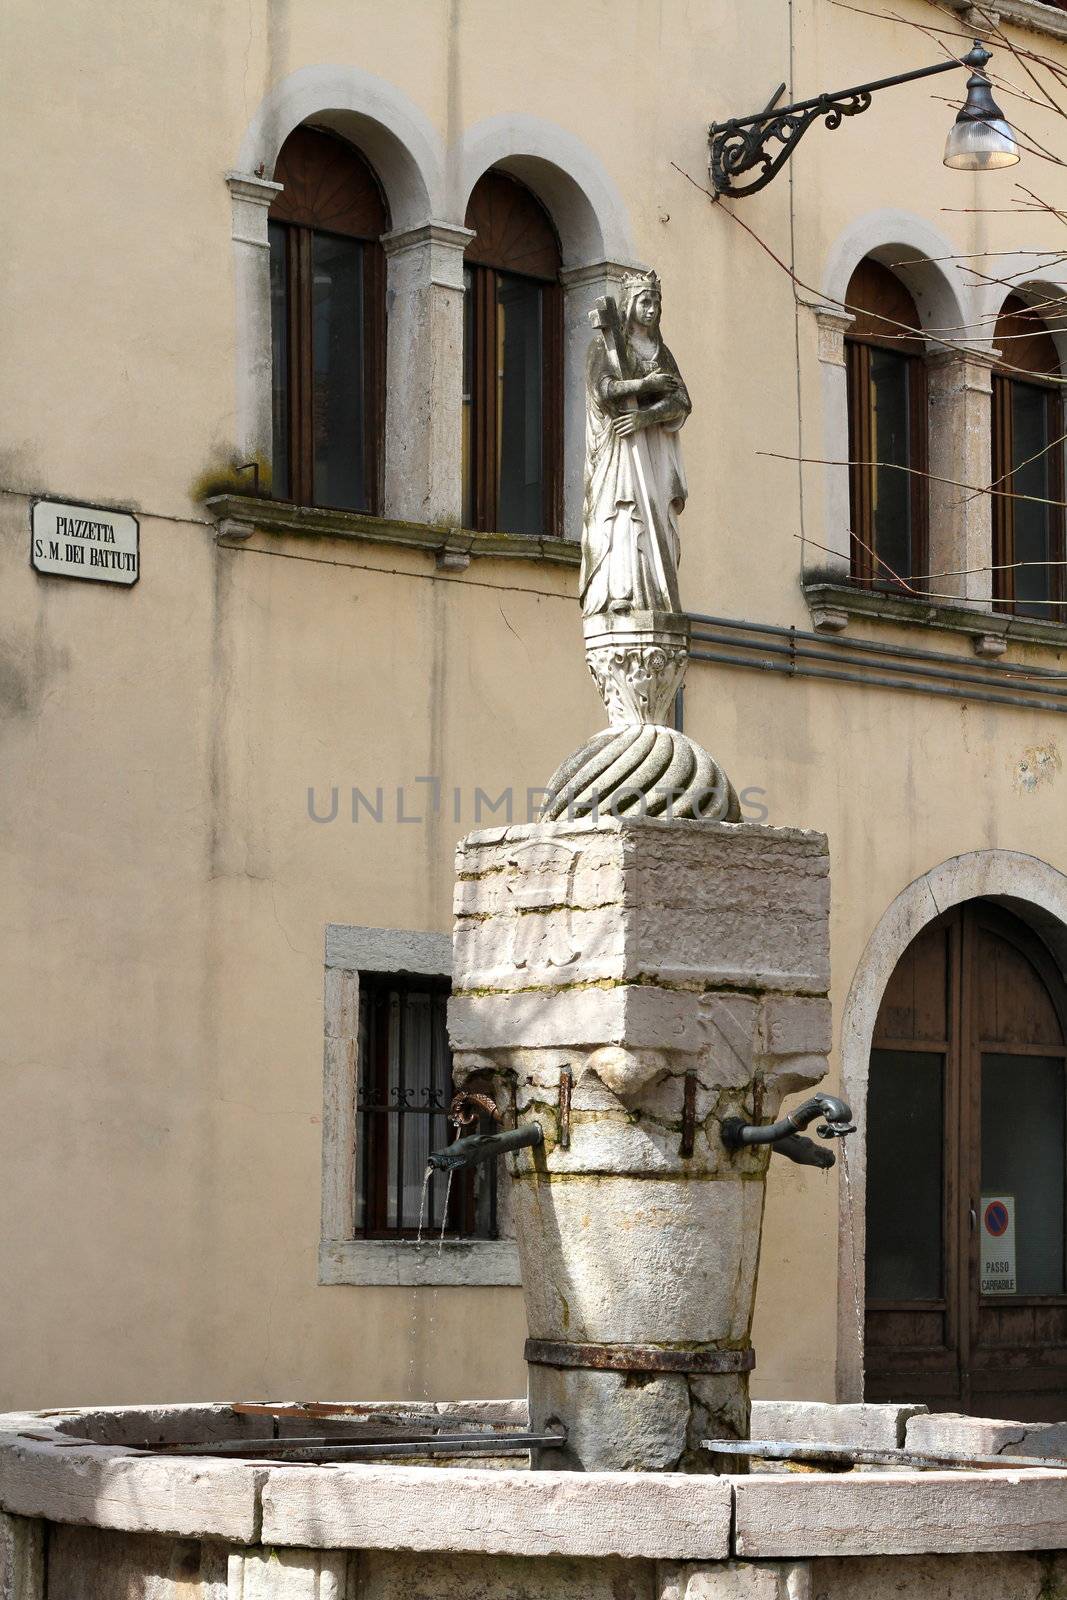 ancient fountain in Belluno dedicated to Santa Maria dei Battuti